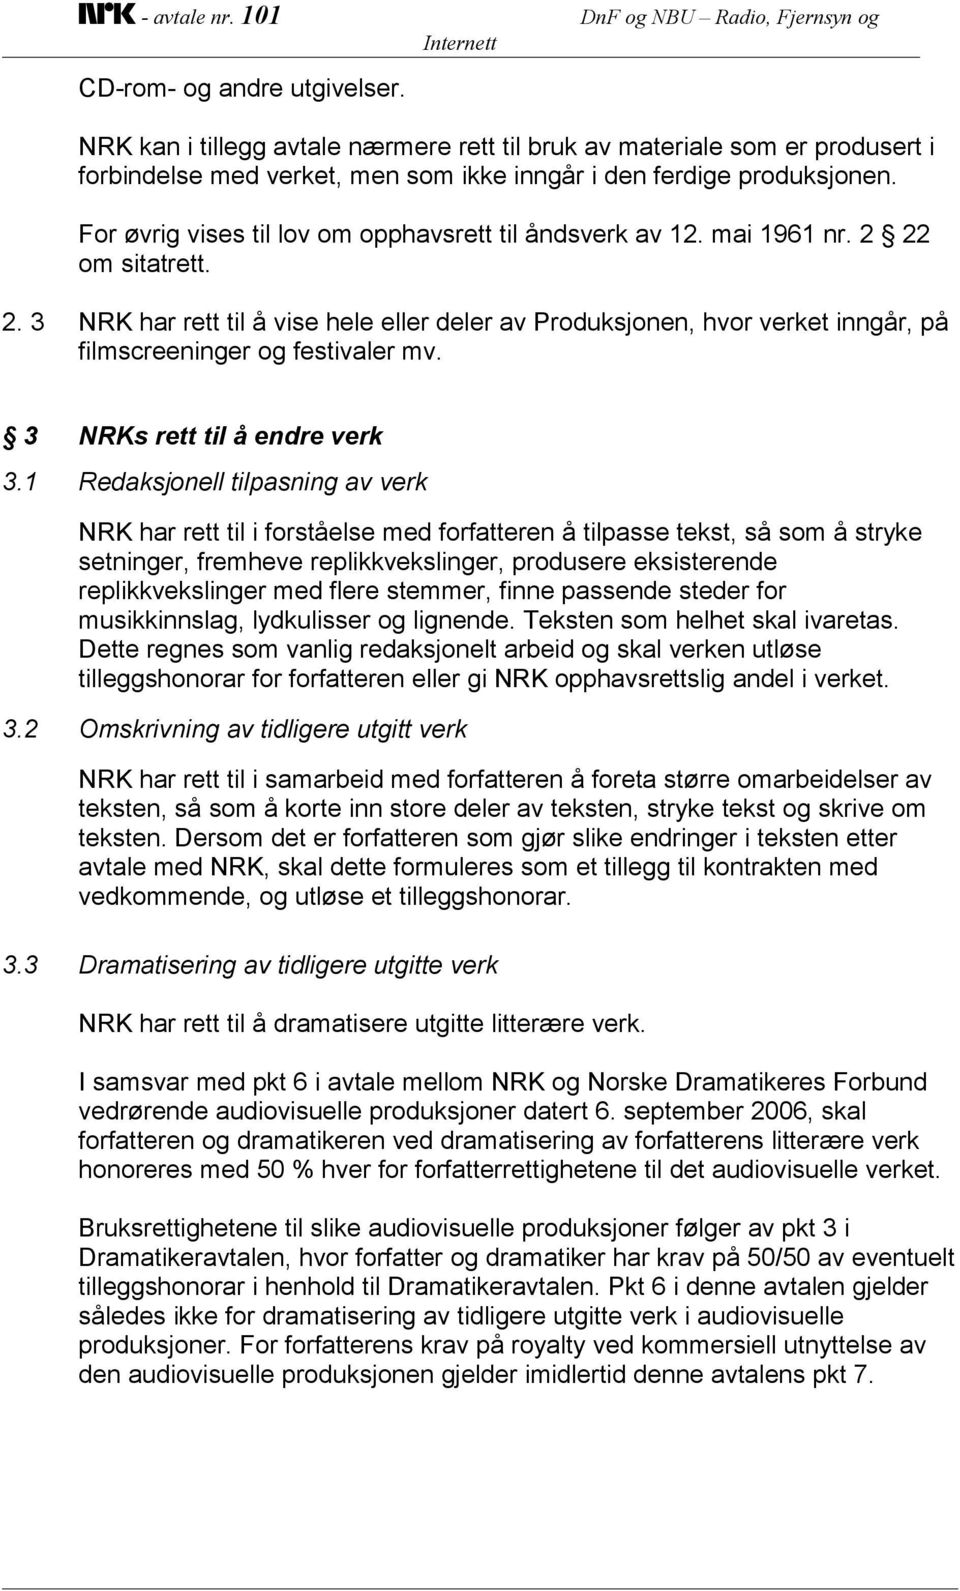 For øvrig vises til lov om opphavsrett til åndsverk av 12. mai 1961 nr. 2 22 om sitatrett. 2. 3 NRK har rett til å vise hele eller deler av Produksjonen, hvor verket inngår, på filmscreeninger og festivaler mv.